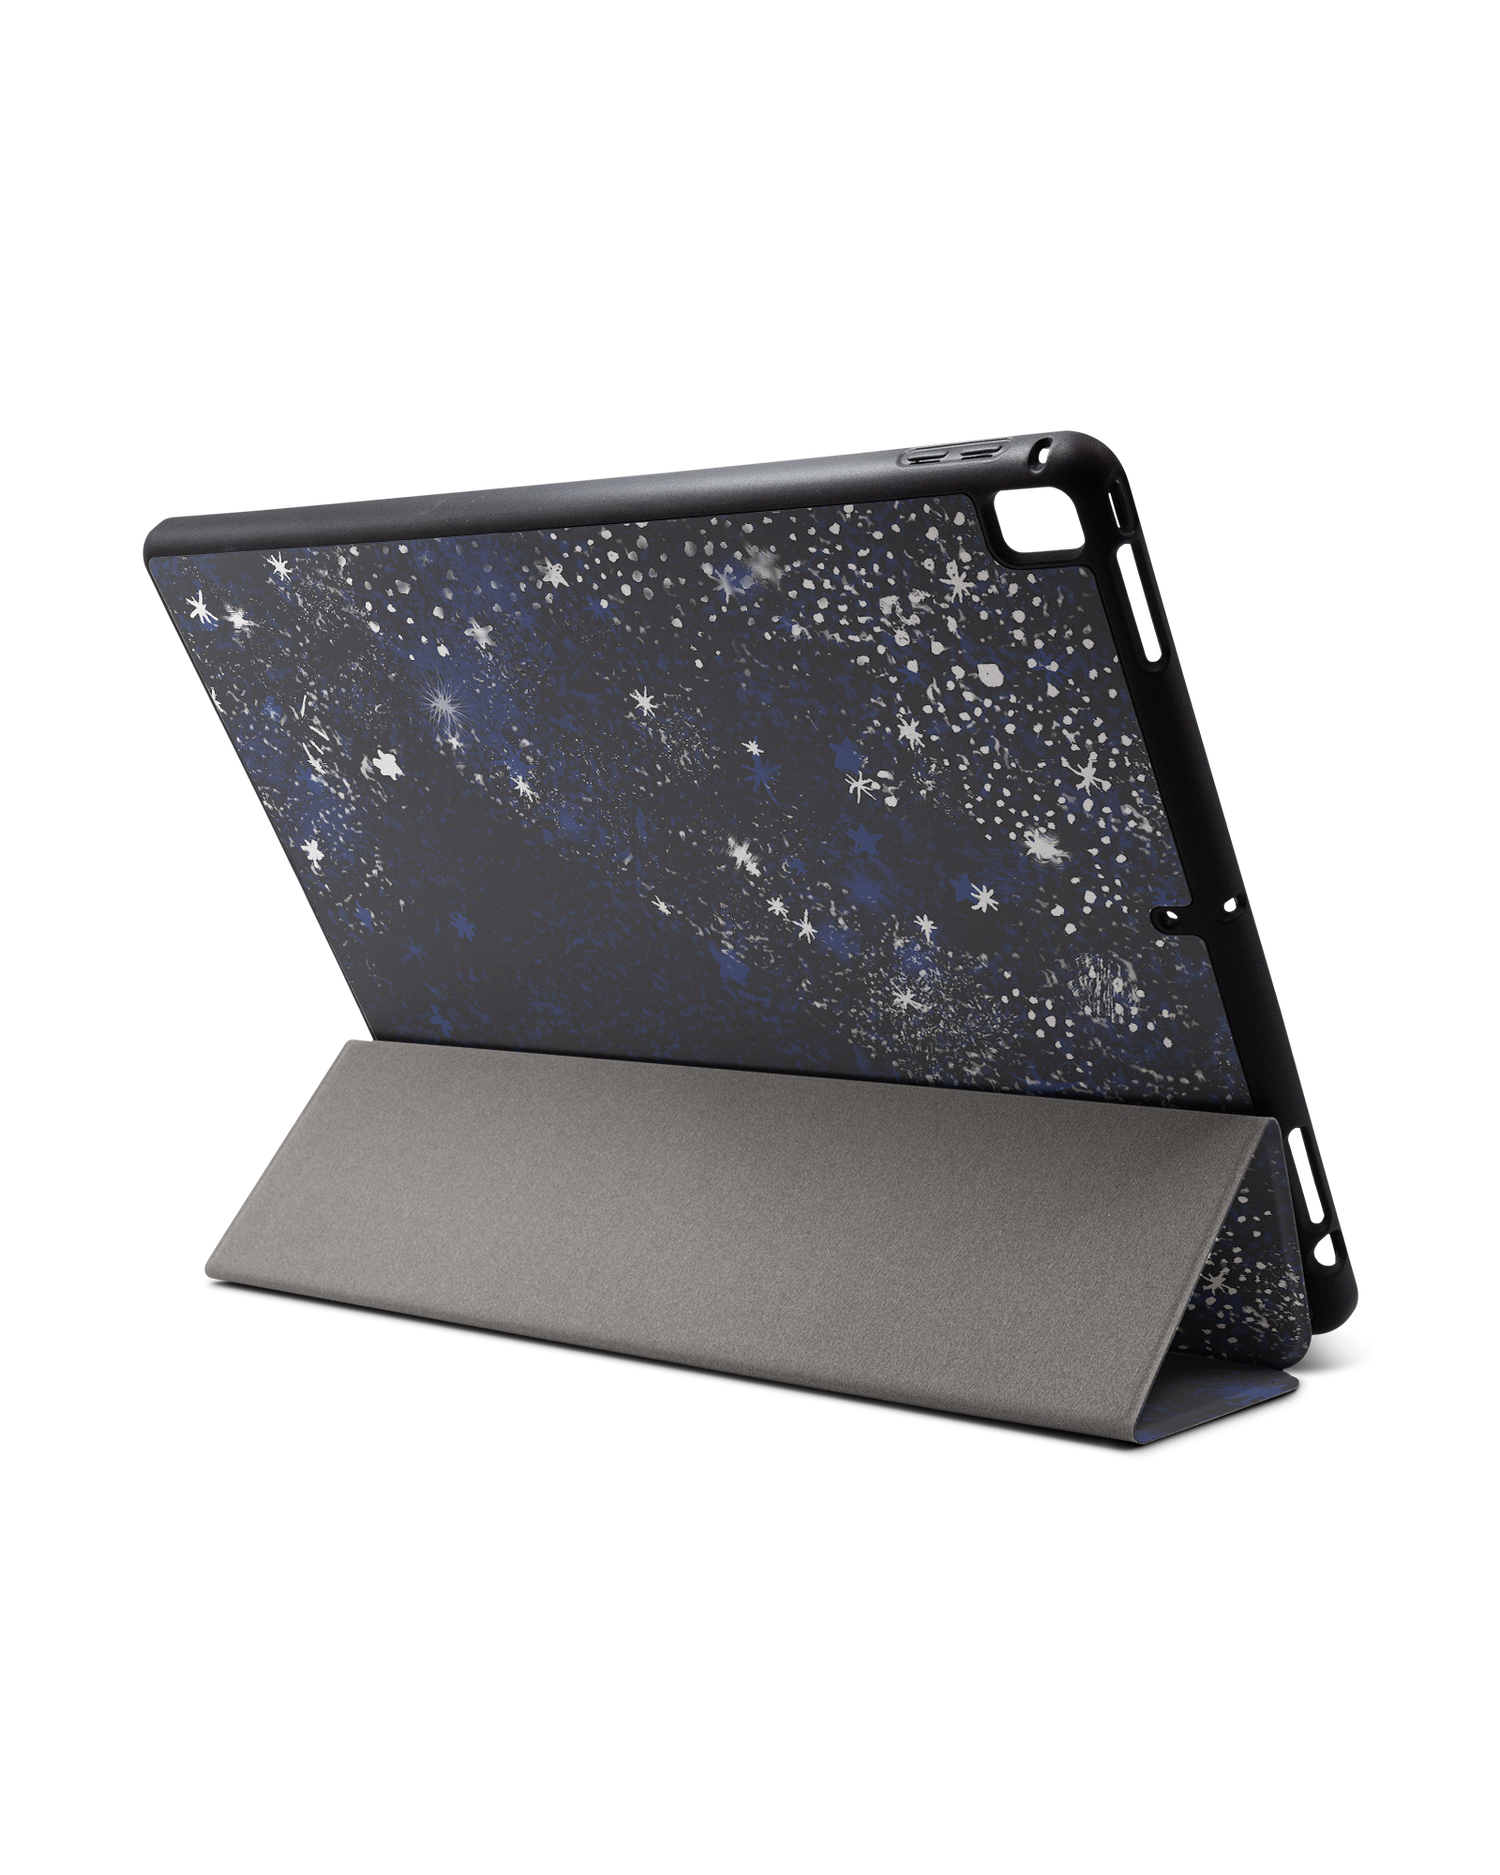 Starry Night Sky iPad Hülle mit Stifthalter für Apple iPad Pro 2 12.9'' (2017): Aufgestellt im Querformat von hinten